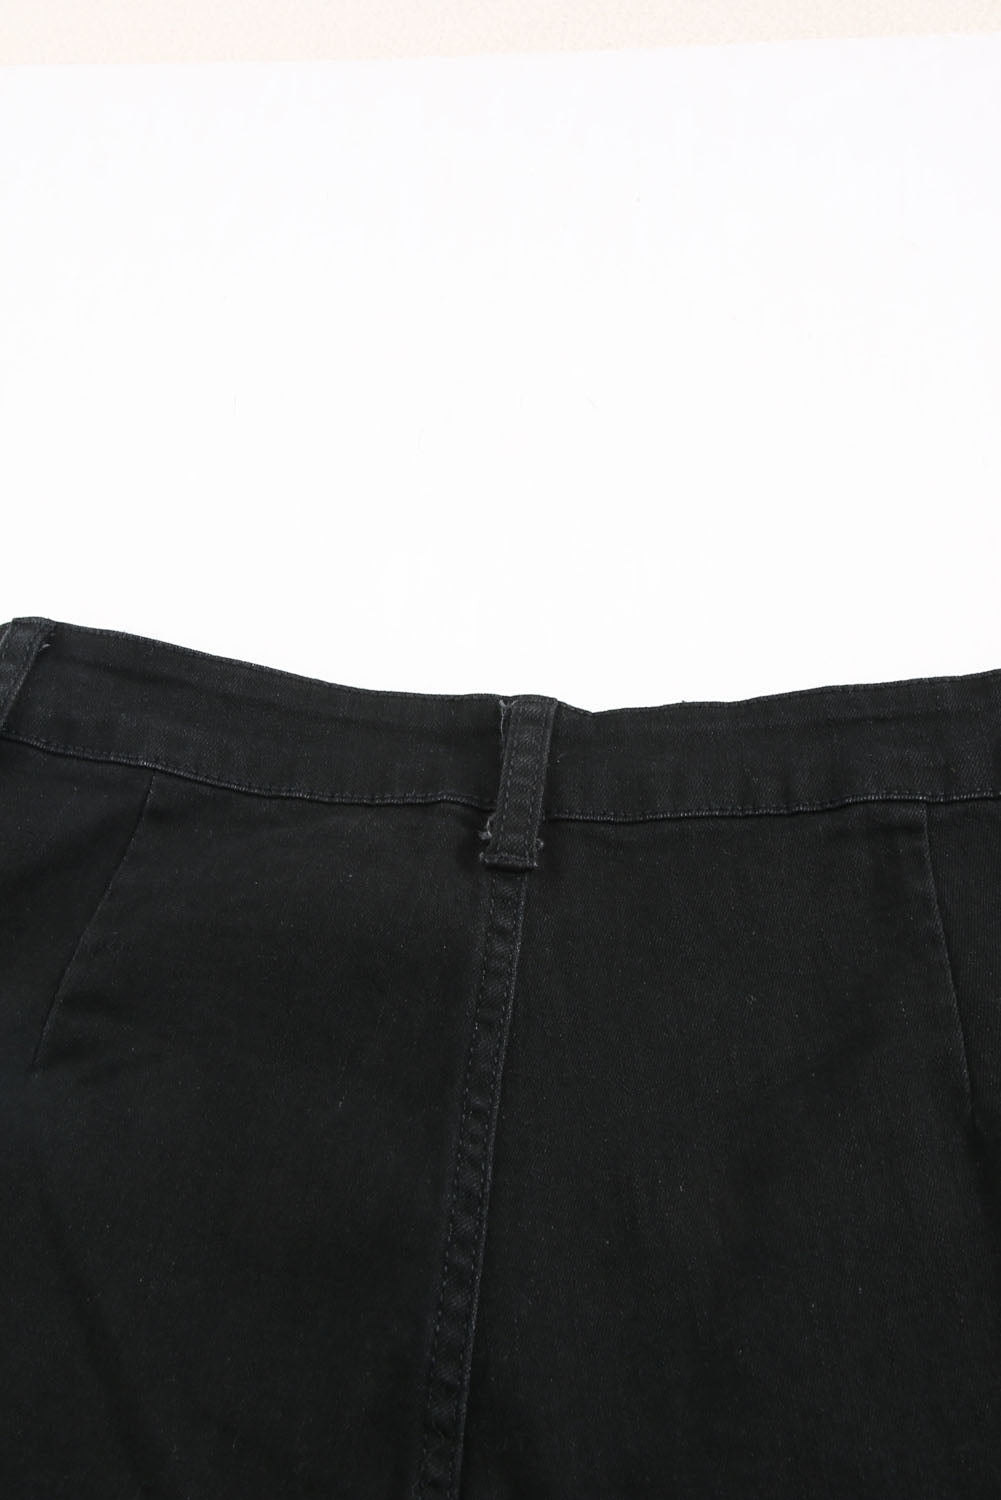 Black Vintage Casual Pocket Flared Jeans